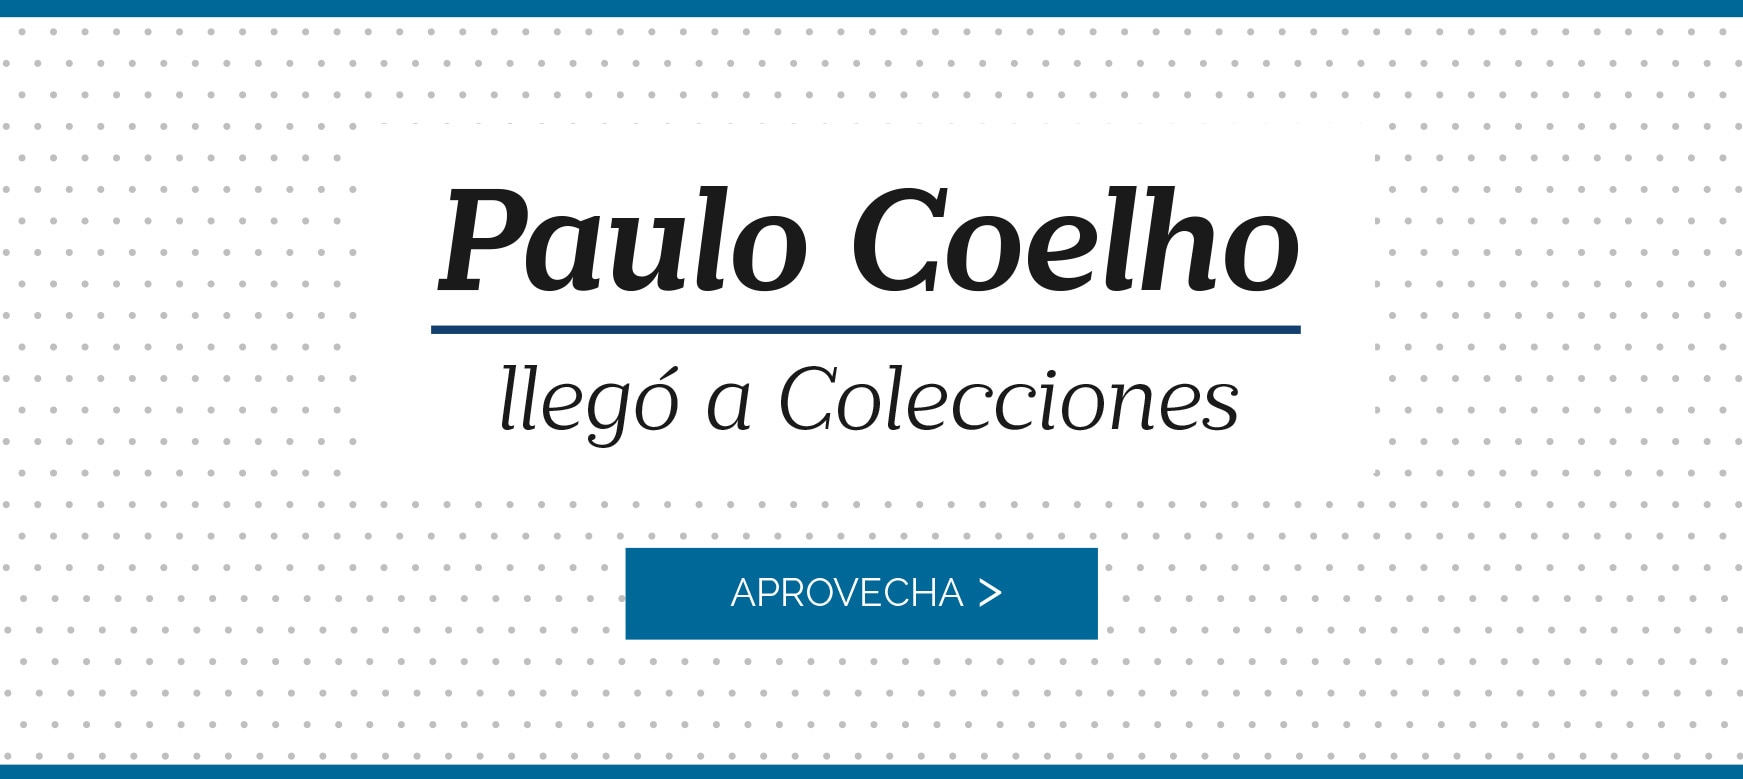 Paulo Coelho llegó a Colecciones